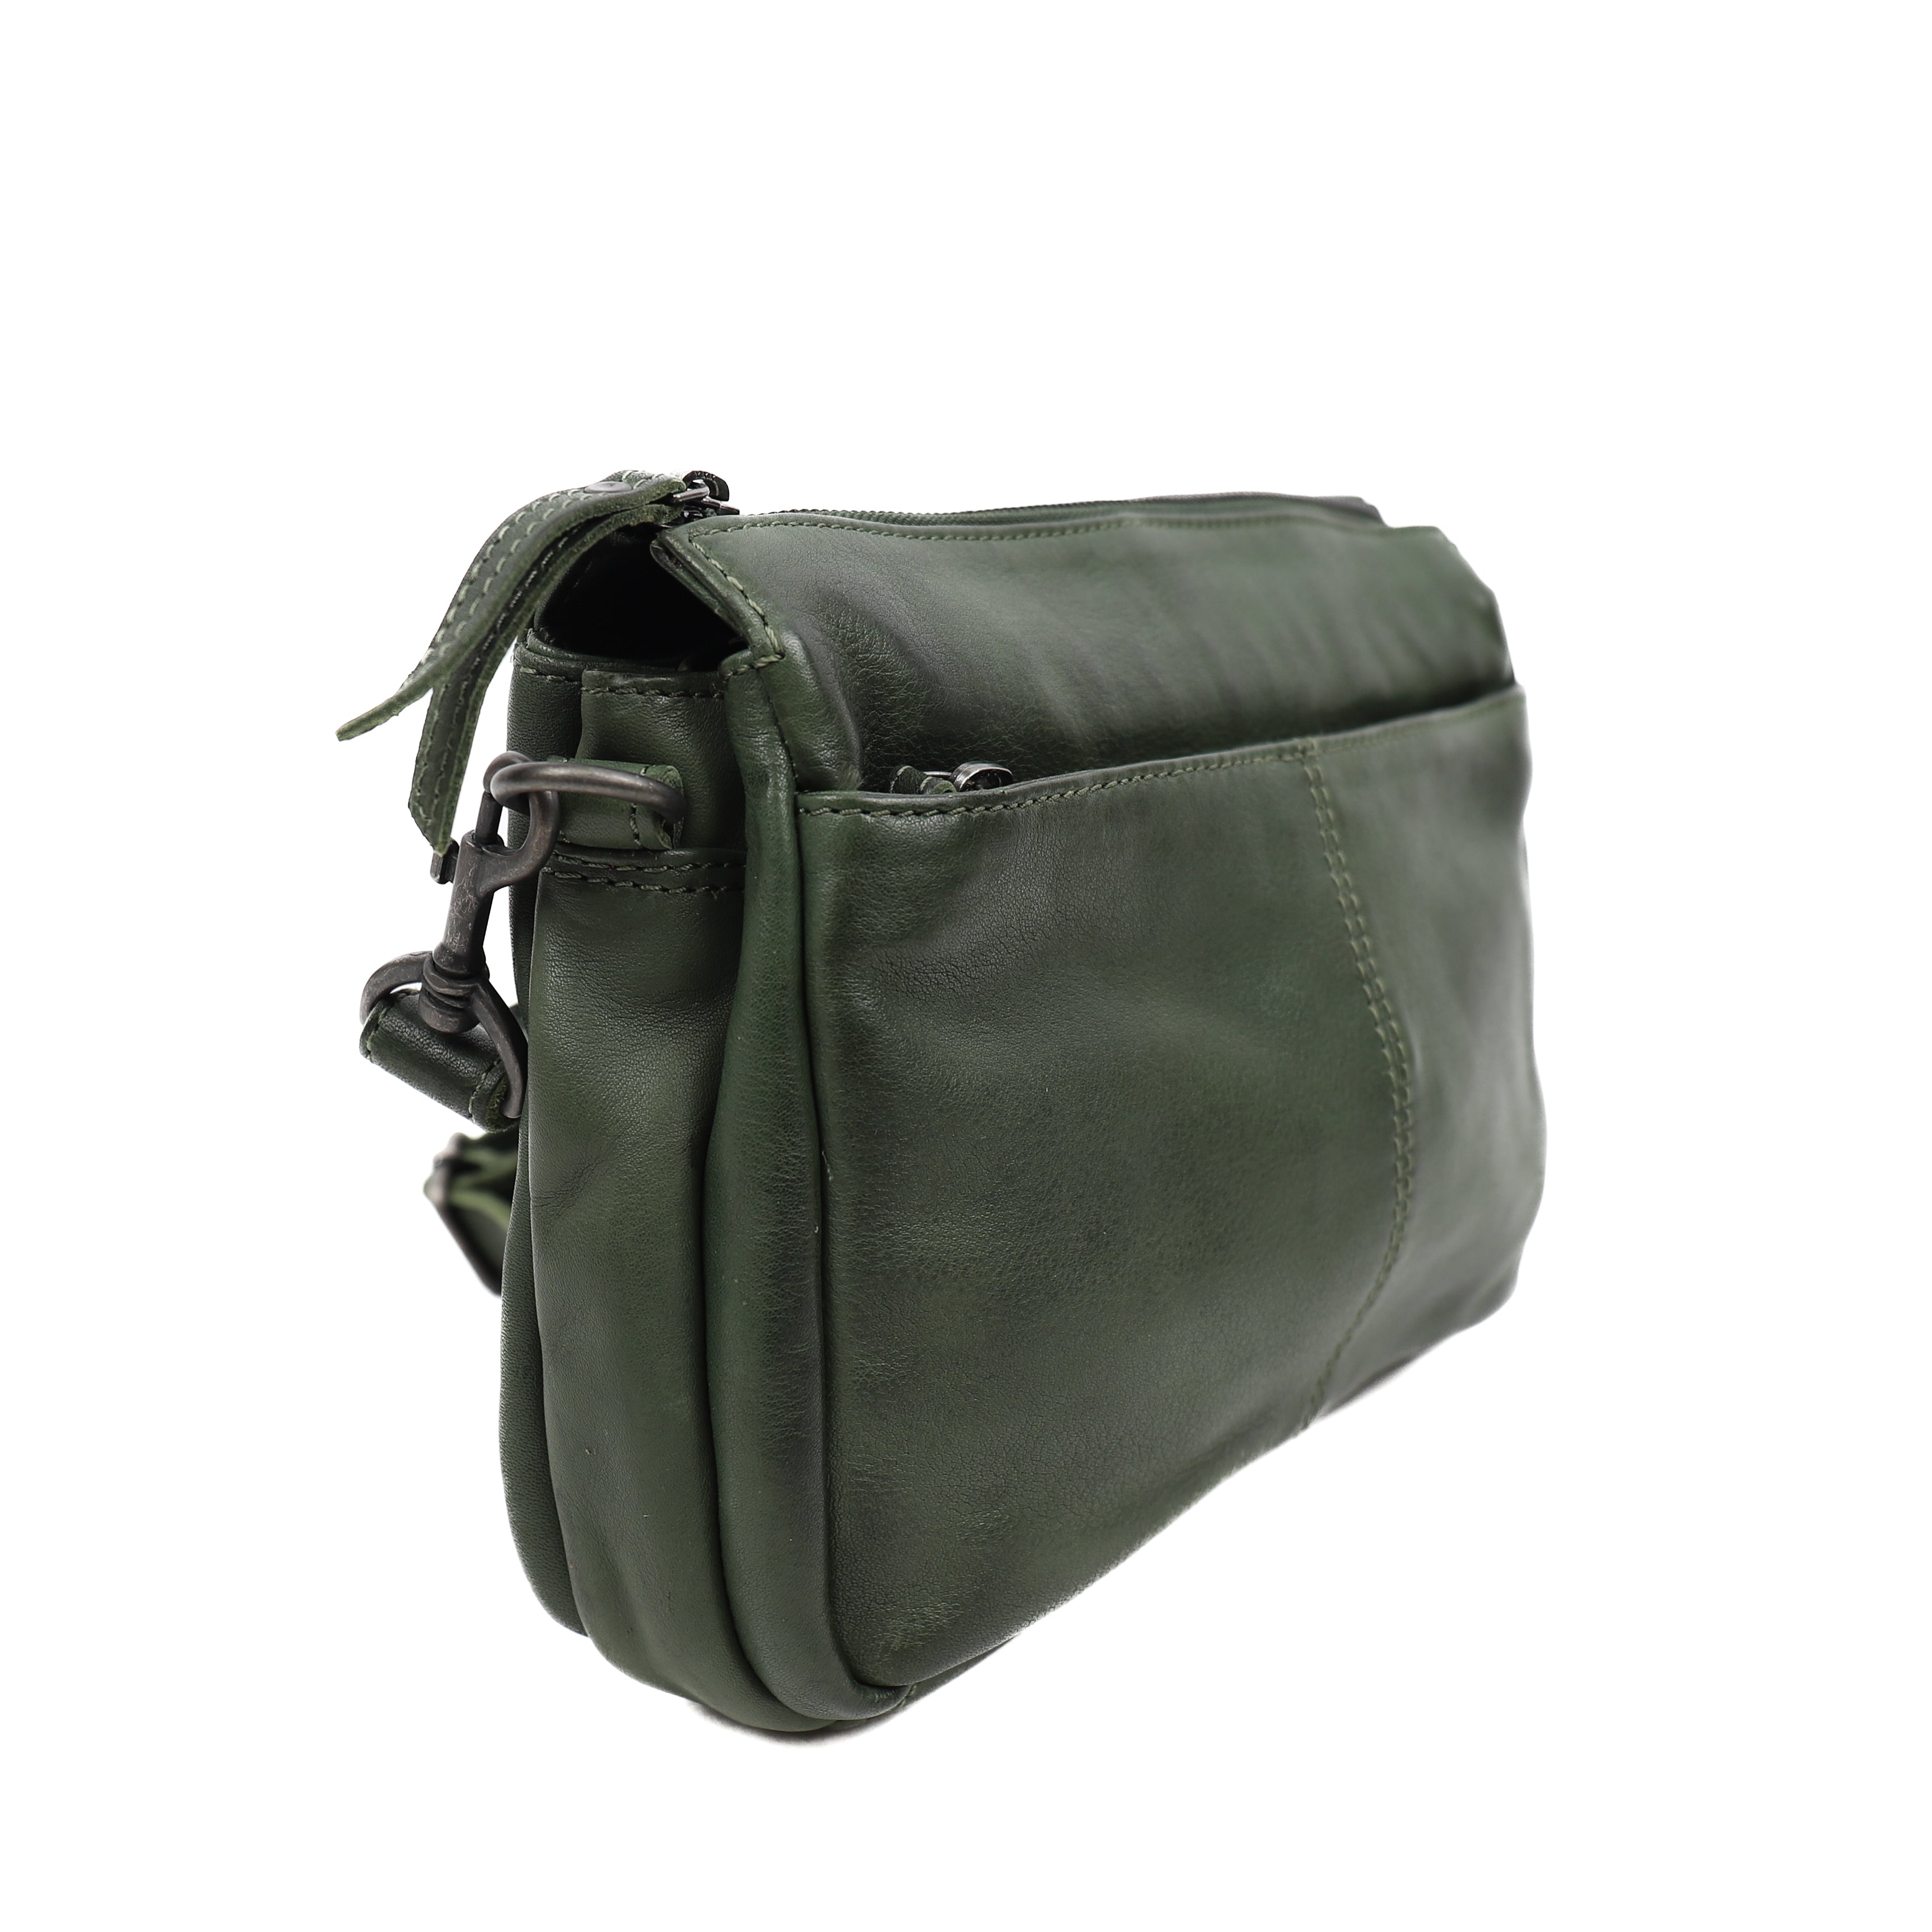 Shoulder bag 'Natascha' green - CP 1743